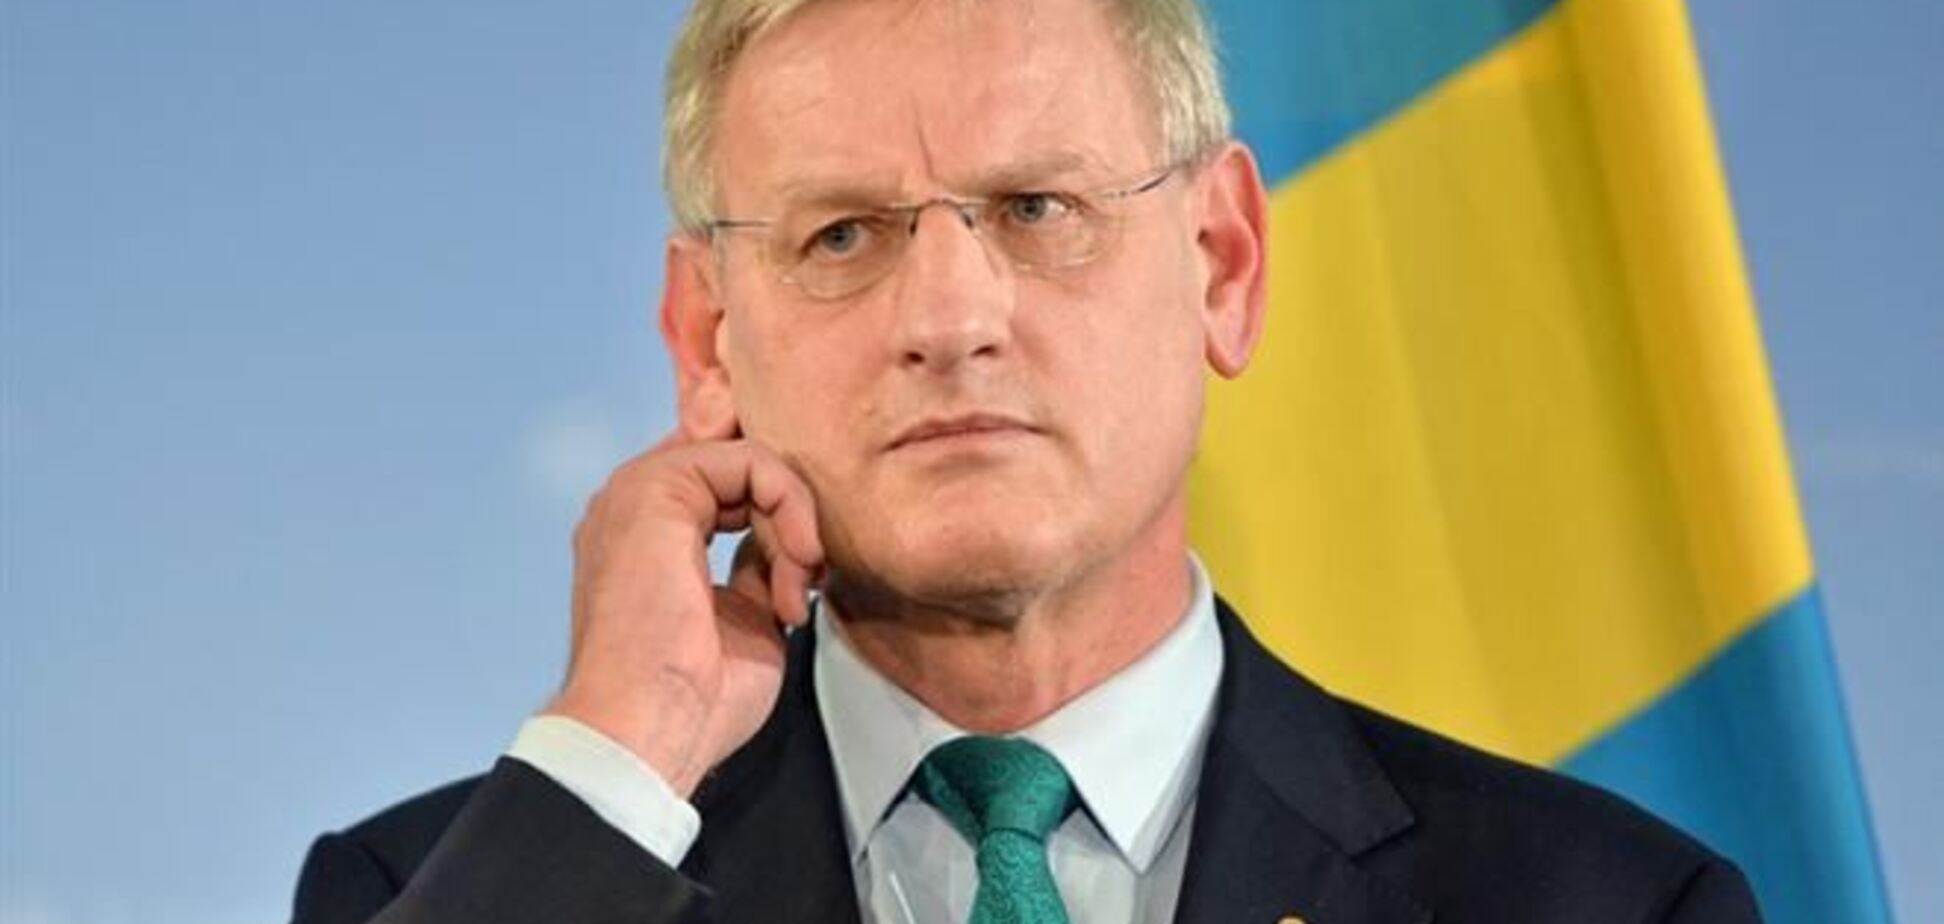 Новий уряд України потребує термінової підтримки - МЗС Швеції